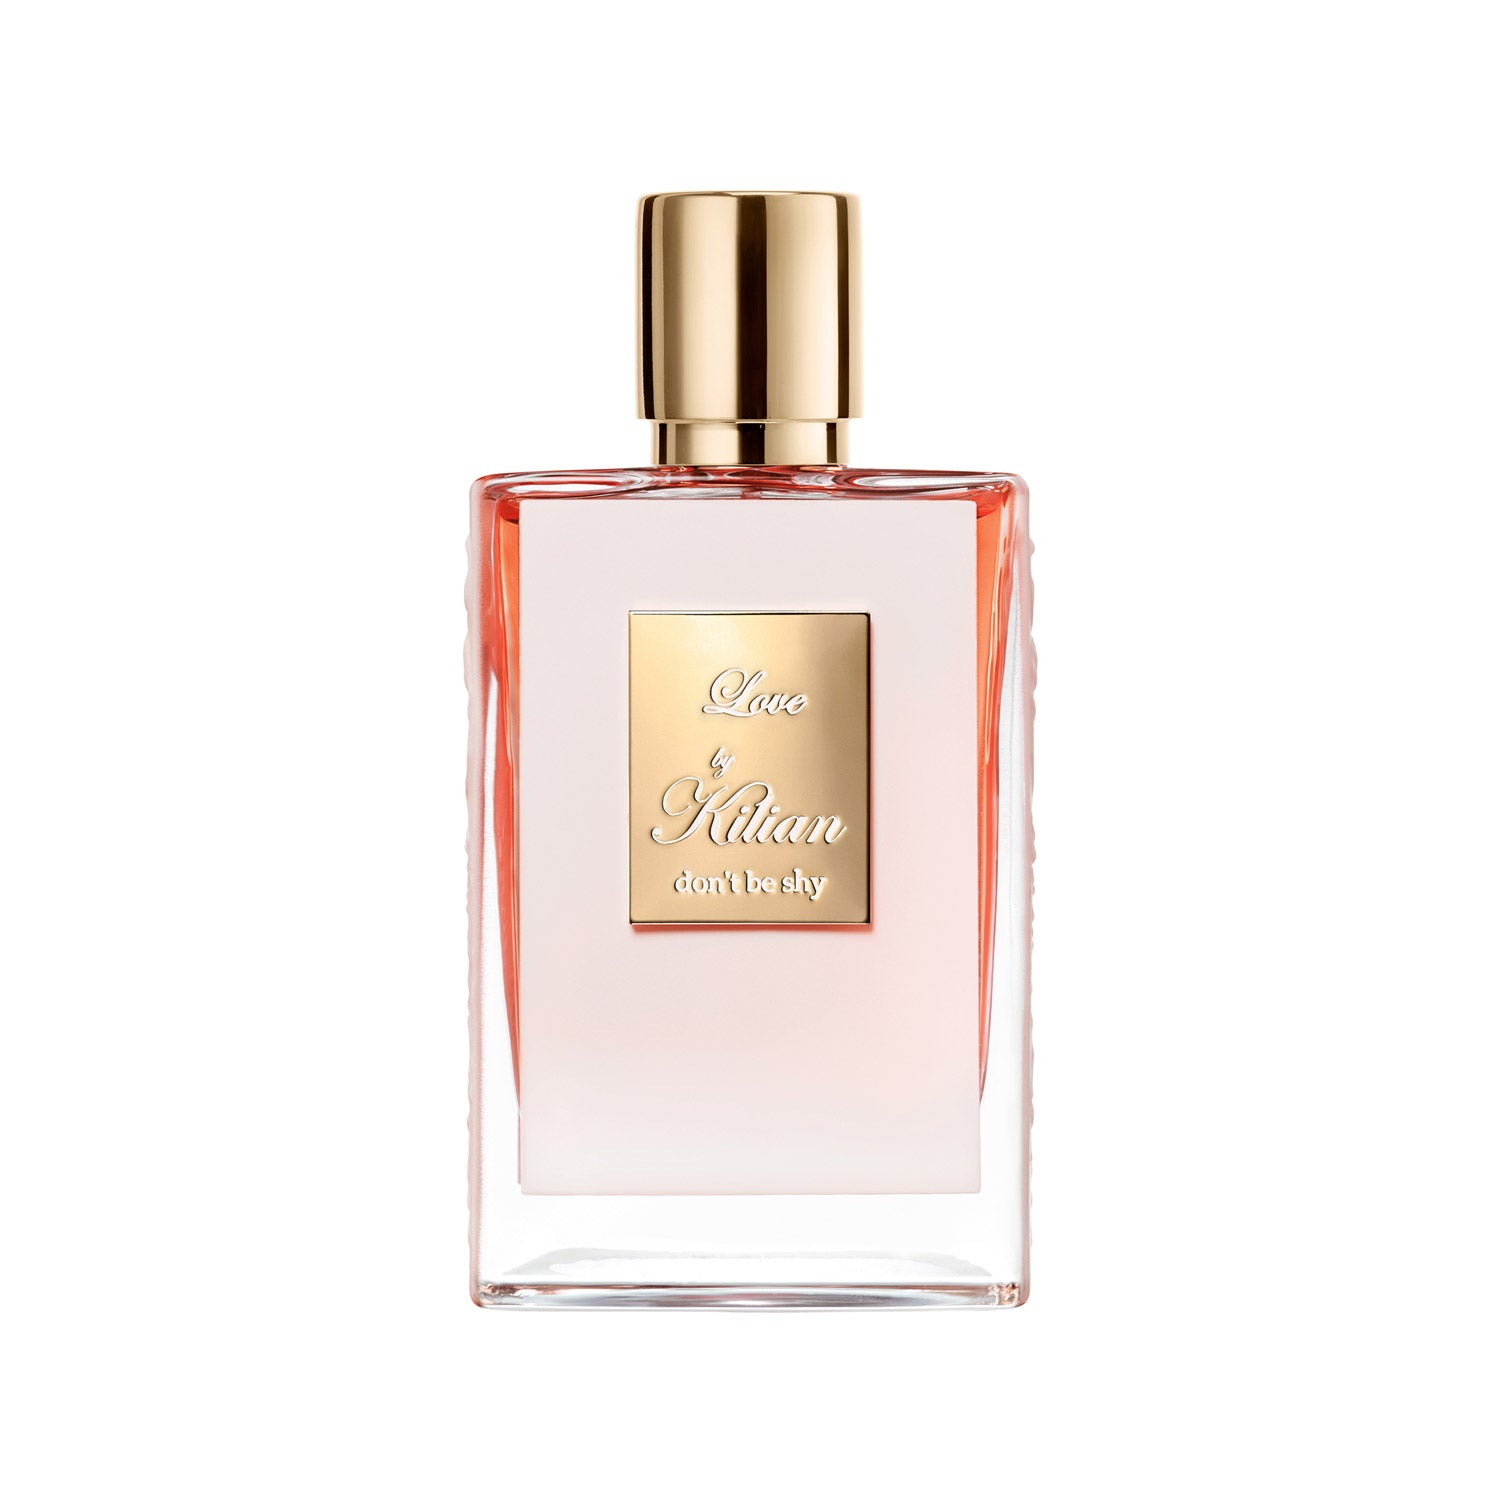 Dior - J’adore Eau de Parfum - Limited Edition-eau de Parfum Fragrance - Floral and Sensual Notes - Gift Case